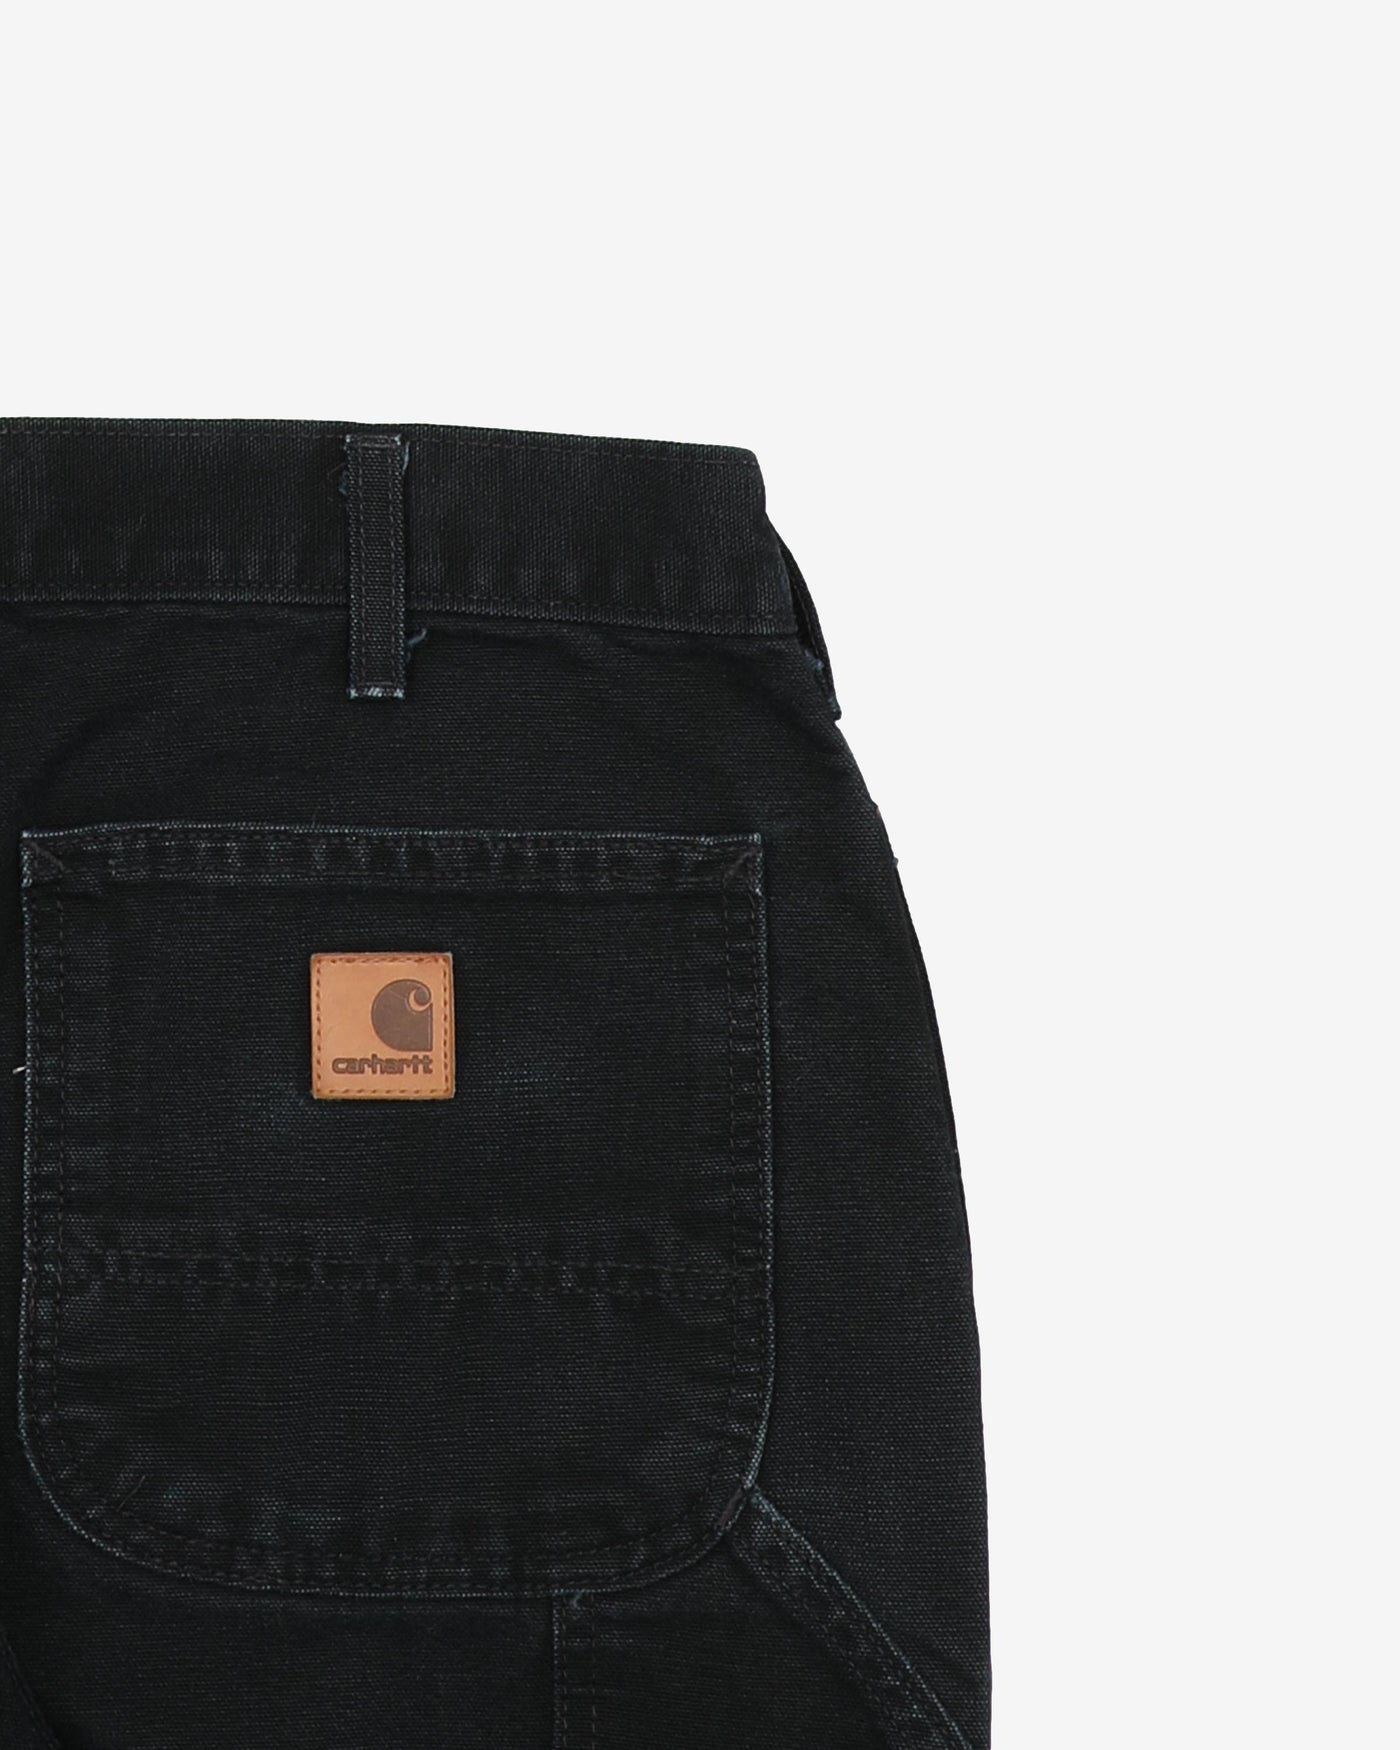 Carhartt Black Workwear Jeans - W32 L29